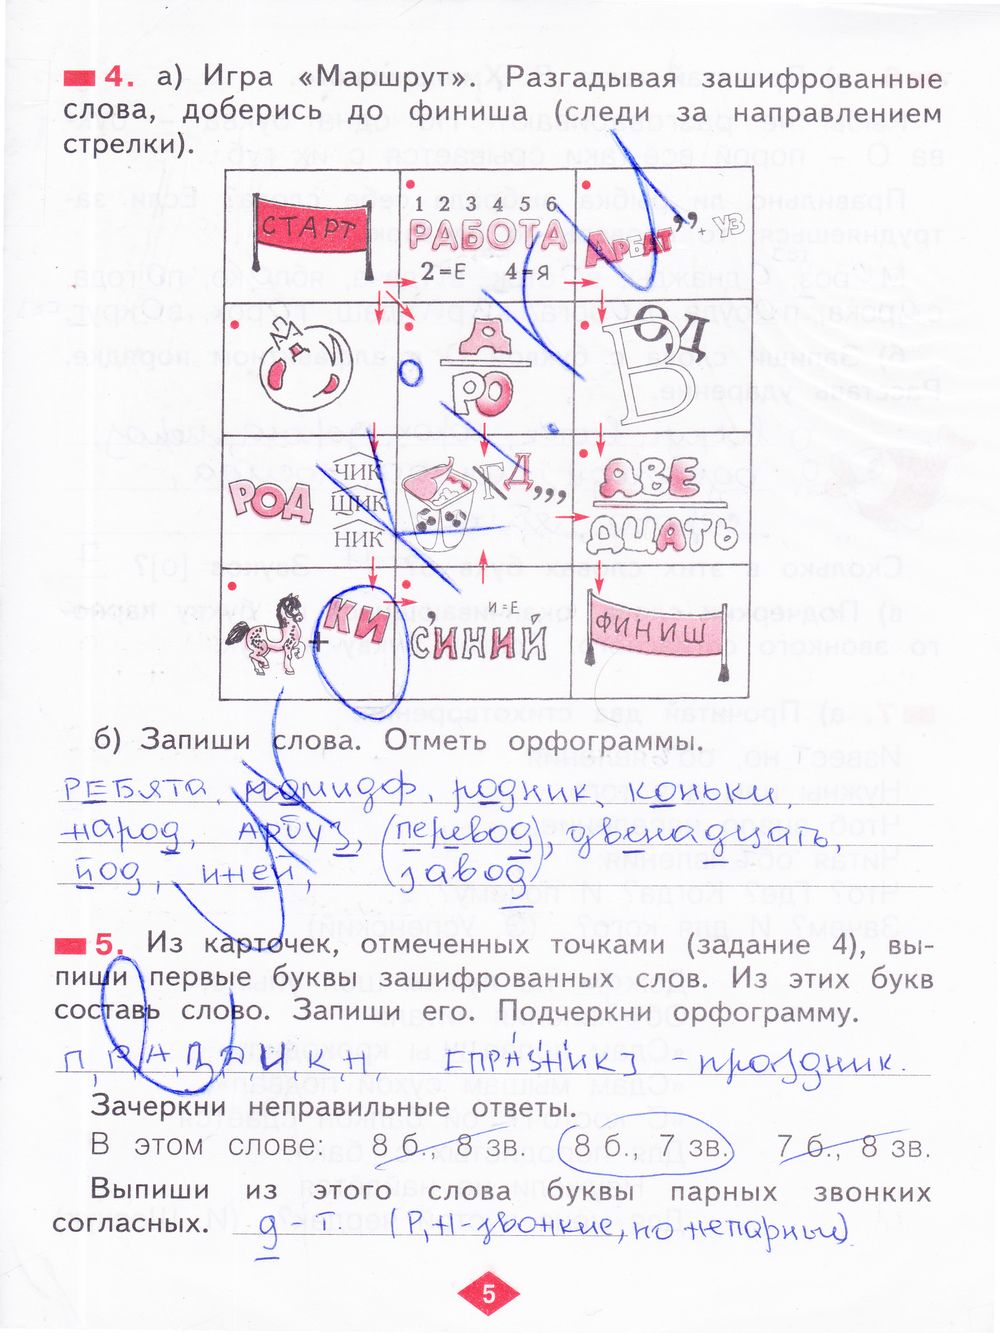 ГДЗ Русский язык 2 класс - стр. 5